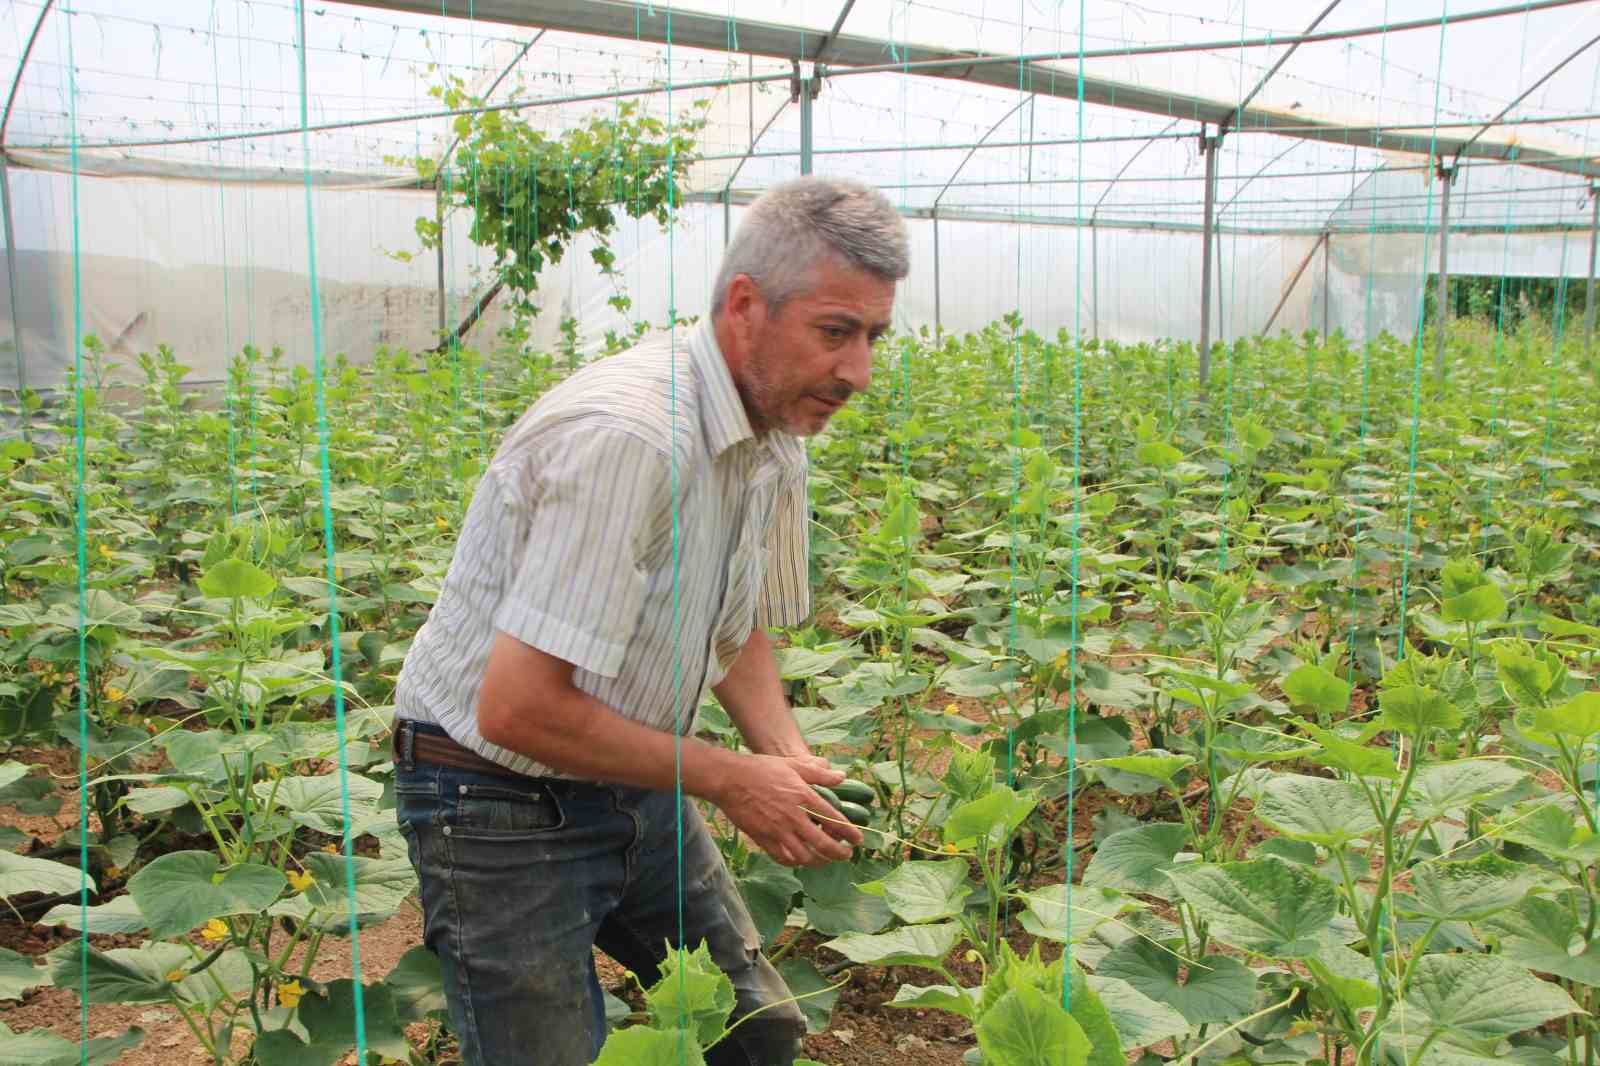 ’Marmara’nın Küçük Antalya’sı’ olarak bilinen Söğüt ve İnhisar ilçelerine bağlı köylerde salatalık hasadı başladı